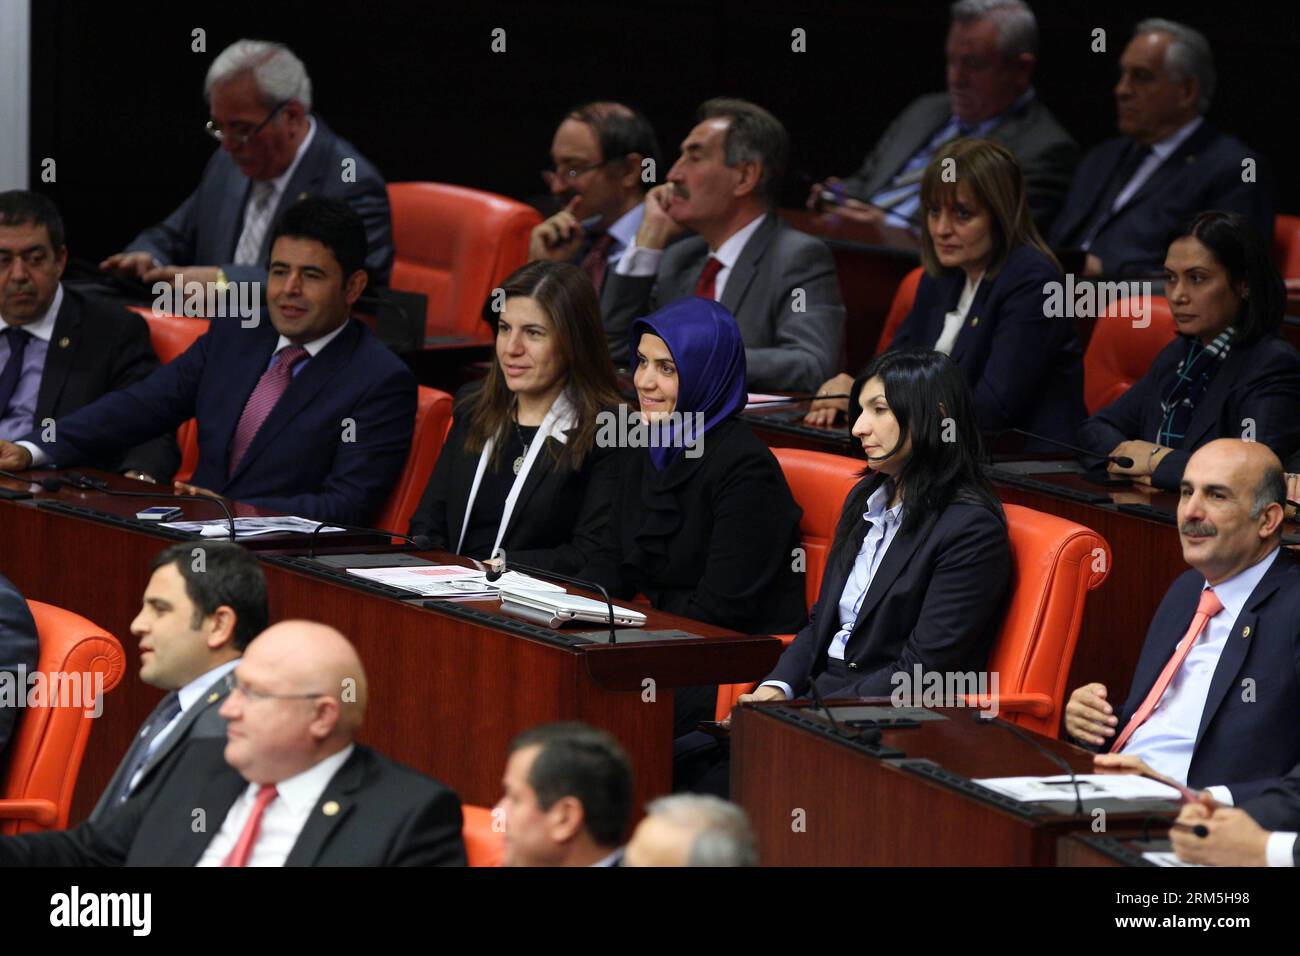 Bildnummer : 60661048 Datum : 31.10.2013 Copyright : imago/Xinhua (131031) -- ANKARA, 31 oct. 2013 (Xinhua) -- Une législatrice turque portant le foulard assiste à une réunion au Parlement turc à Ankara, Turquie, le 31 octobre 2013. Quatre législateurs du gouvernement turc à racines islamiques ont assisté jeudi au Parlement en portant le foulard pour la première fois, brisant un long tabou du port du foulard en Turquie. (Xinhua/Mustafa Kaya) TURQUIE-ANKARA-TABOO-FOULARD-BREAK PUBLICATIONxNOTxINxCHN Politik Parlament Frauen Kopftuch religion Islam premiumd x0x xmb 2013 quer 60661048 Date 31 10 201 Banque D'Images